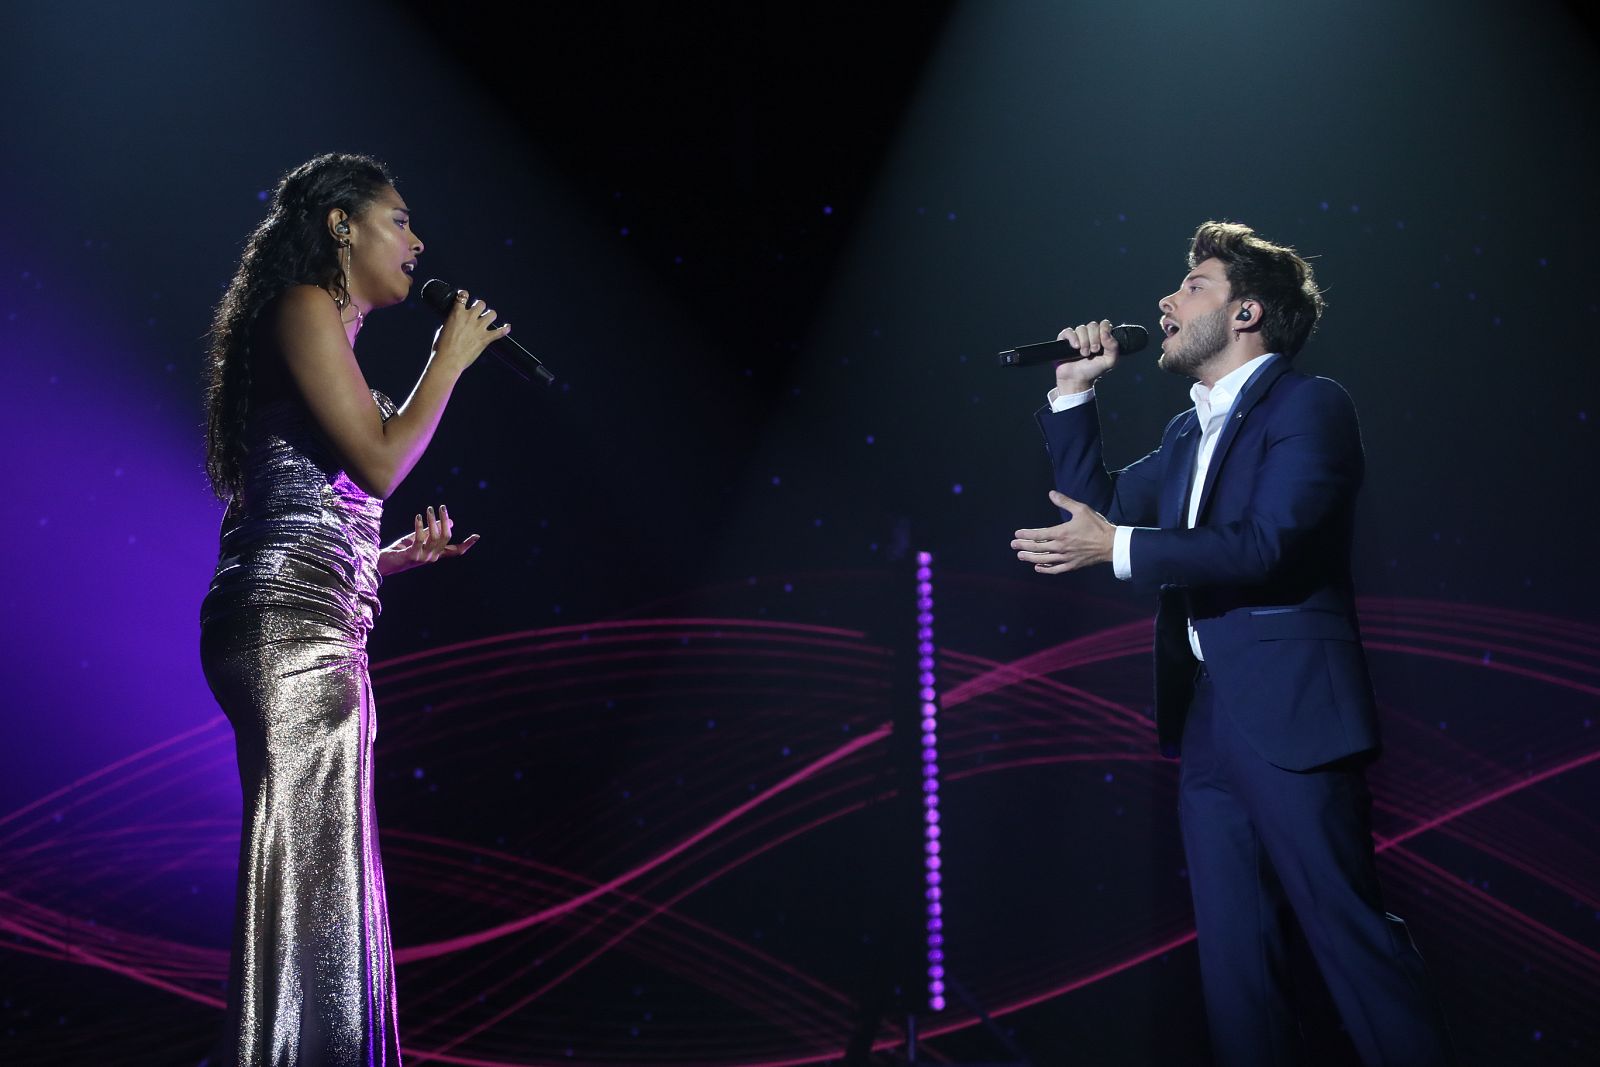 Blas Cantó y Nia cantan "Hoy tengo ganas de ti", de Miguel Gallardo, en la Gala 12 de Operación Triunfo 2020